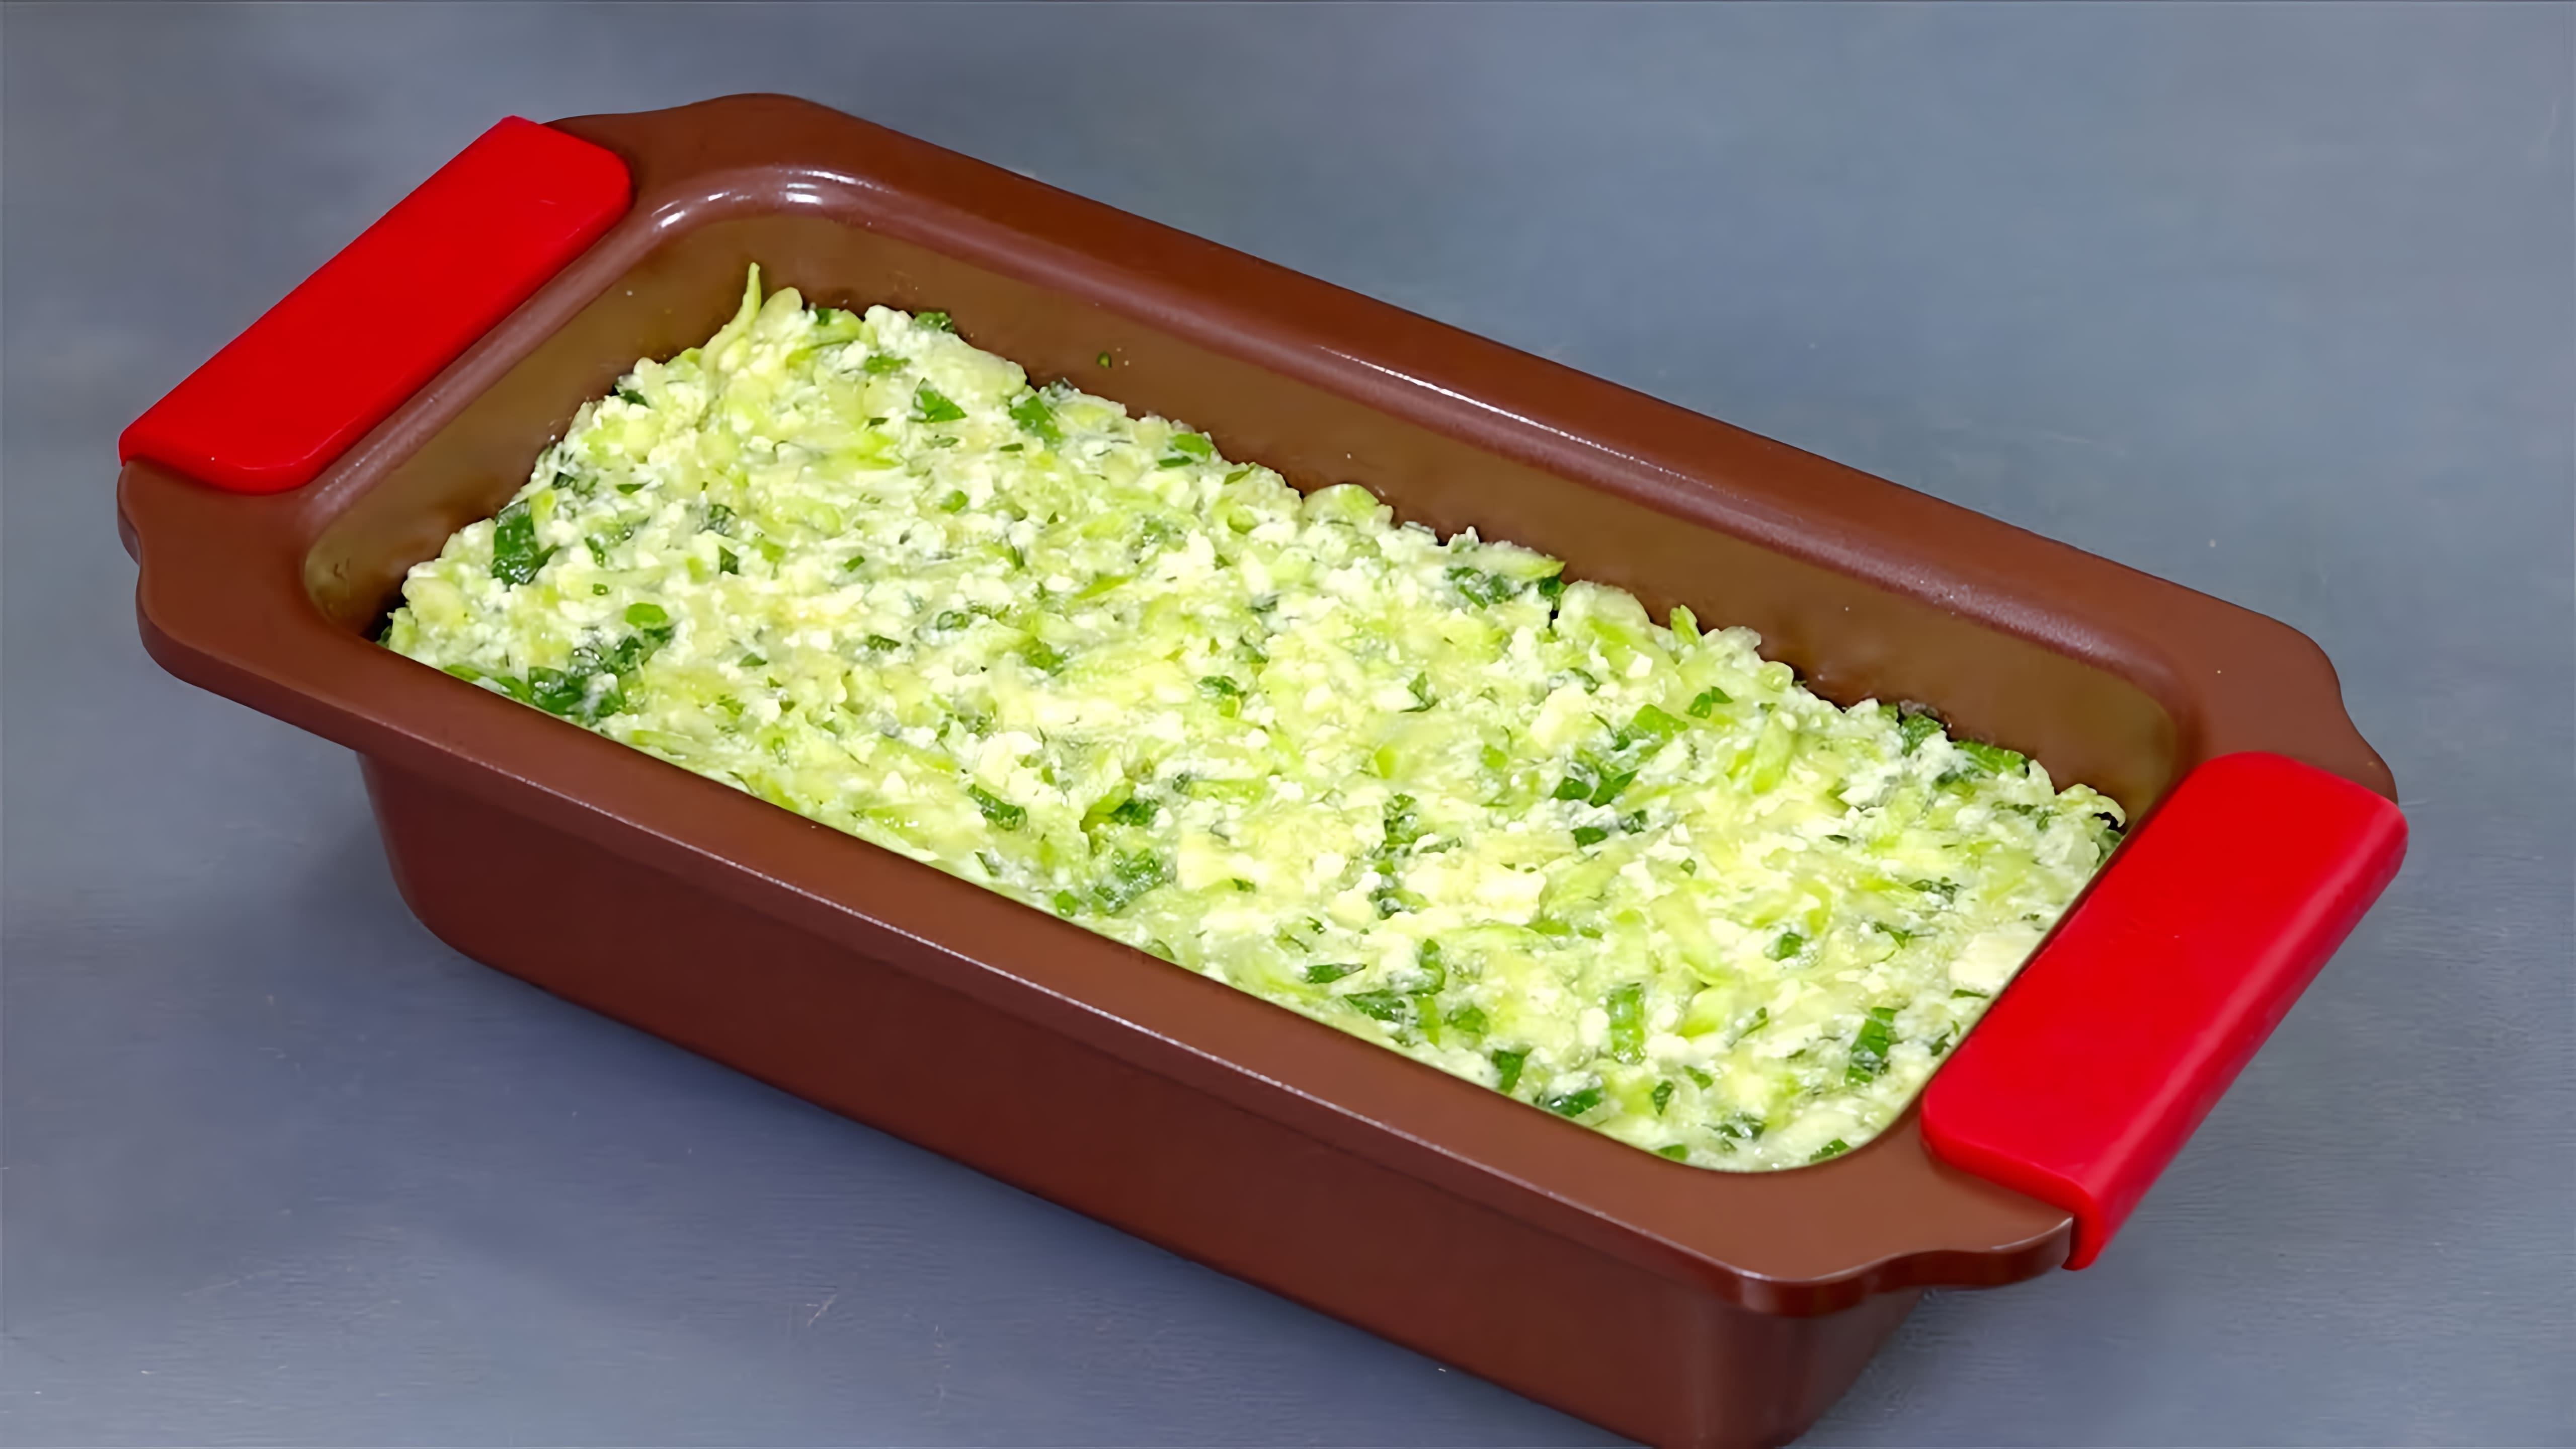 В этом видео демонстрируется процесс приготовления запеканки из кабачков с адыгейским сыром